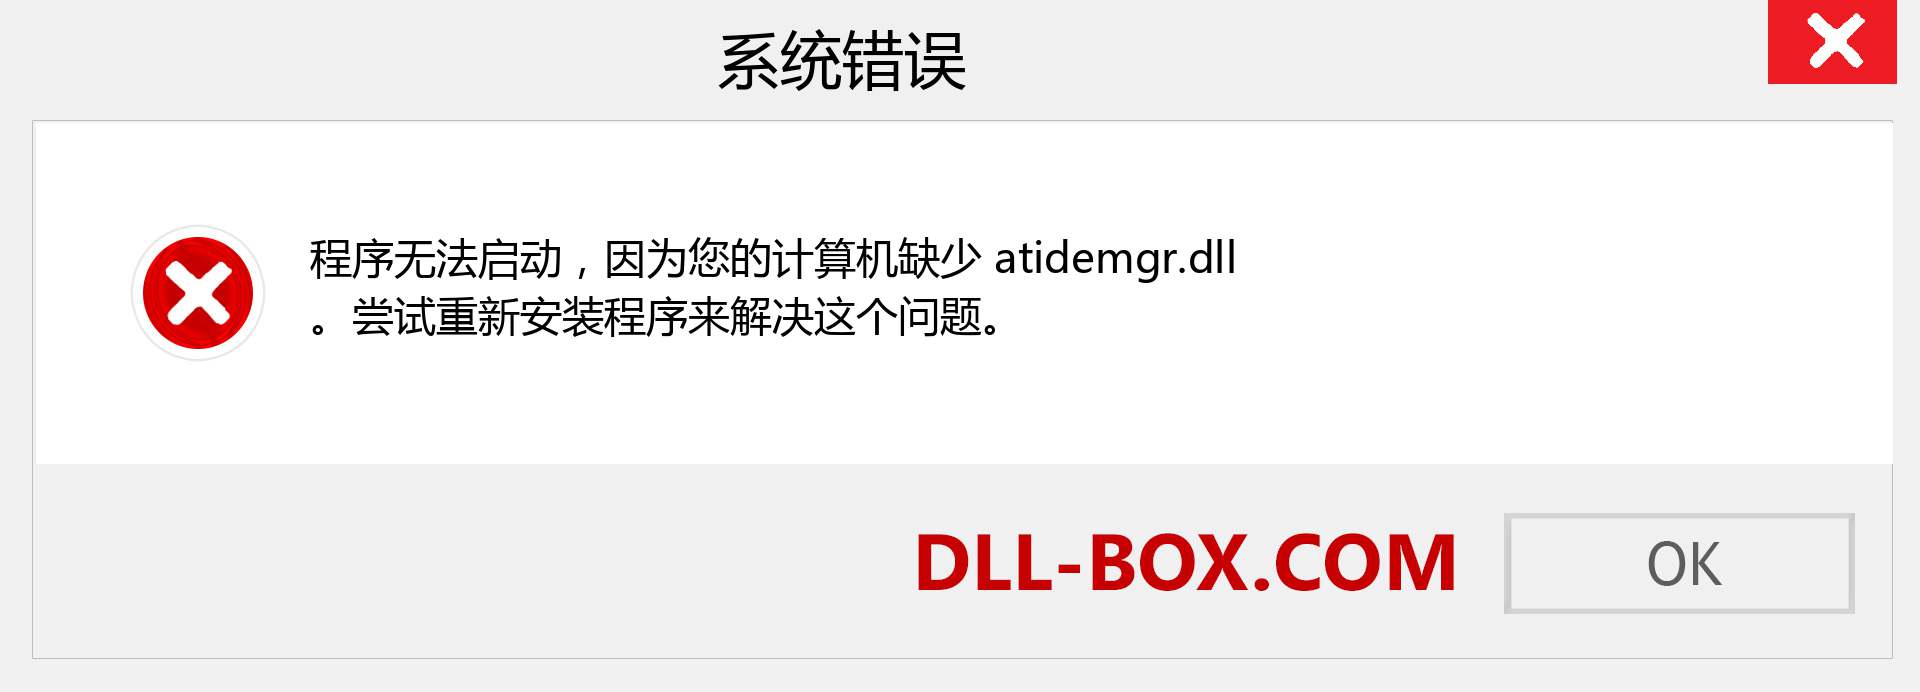 atidemgr.dll 文件丢失？。 适用于 Windows 7、8、10 的下载 - 修复 Windows、照片、图像上的 atidemgr dll 丢失错误